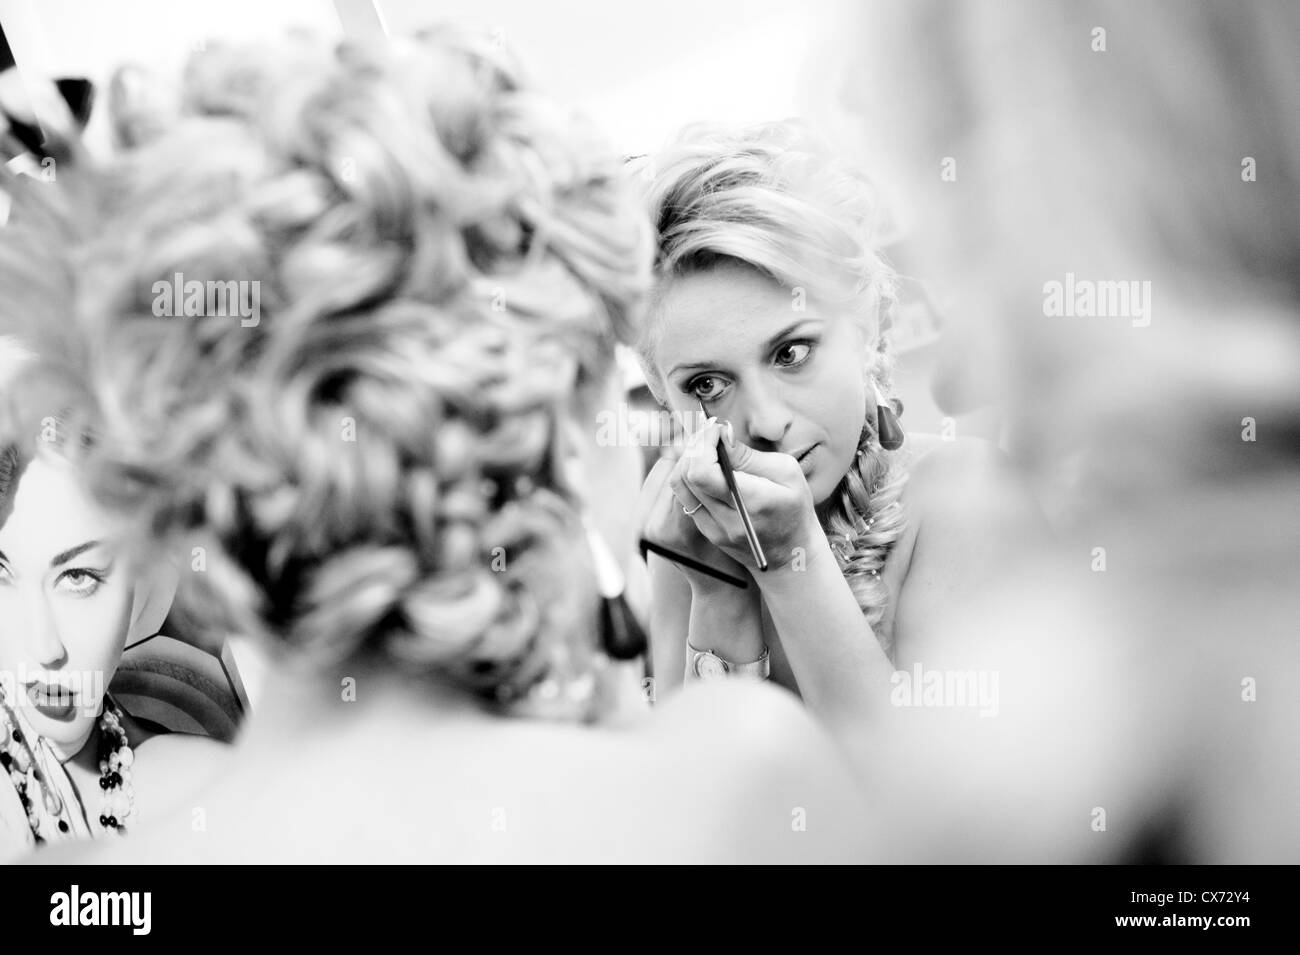 Blond girl applying eyeliner Stock Photo